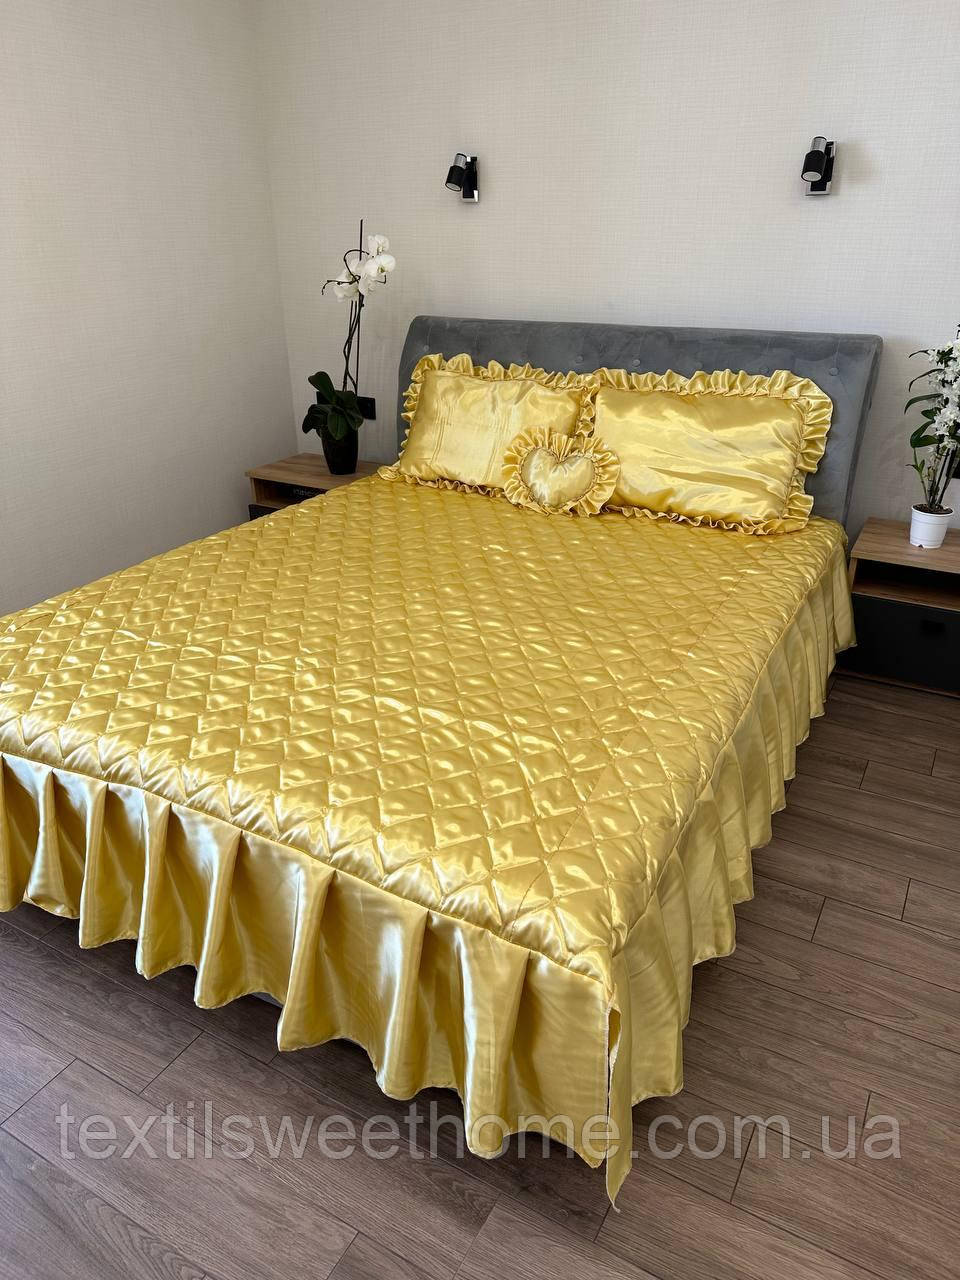 Покривало з атласу для двоспального ліжка з комплектом подушок, покривало жовтого кольору